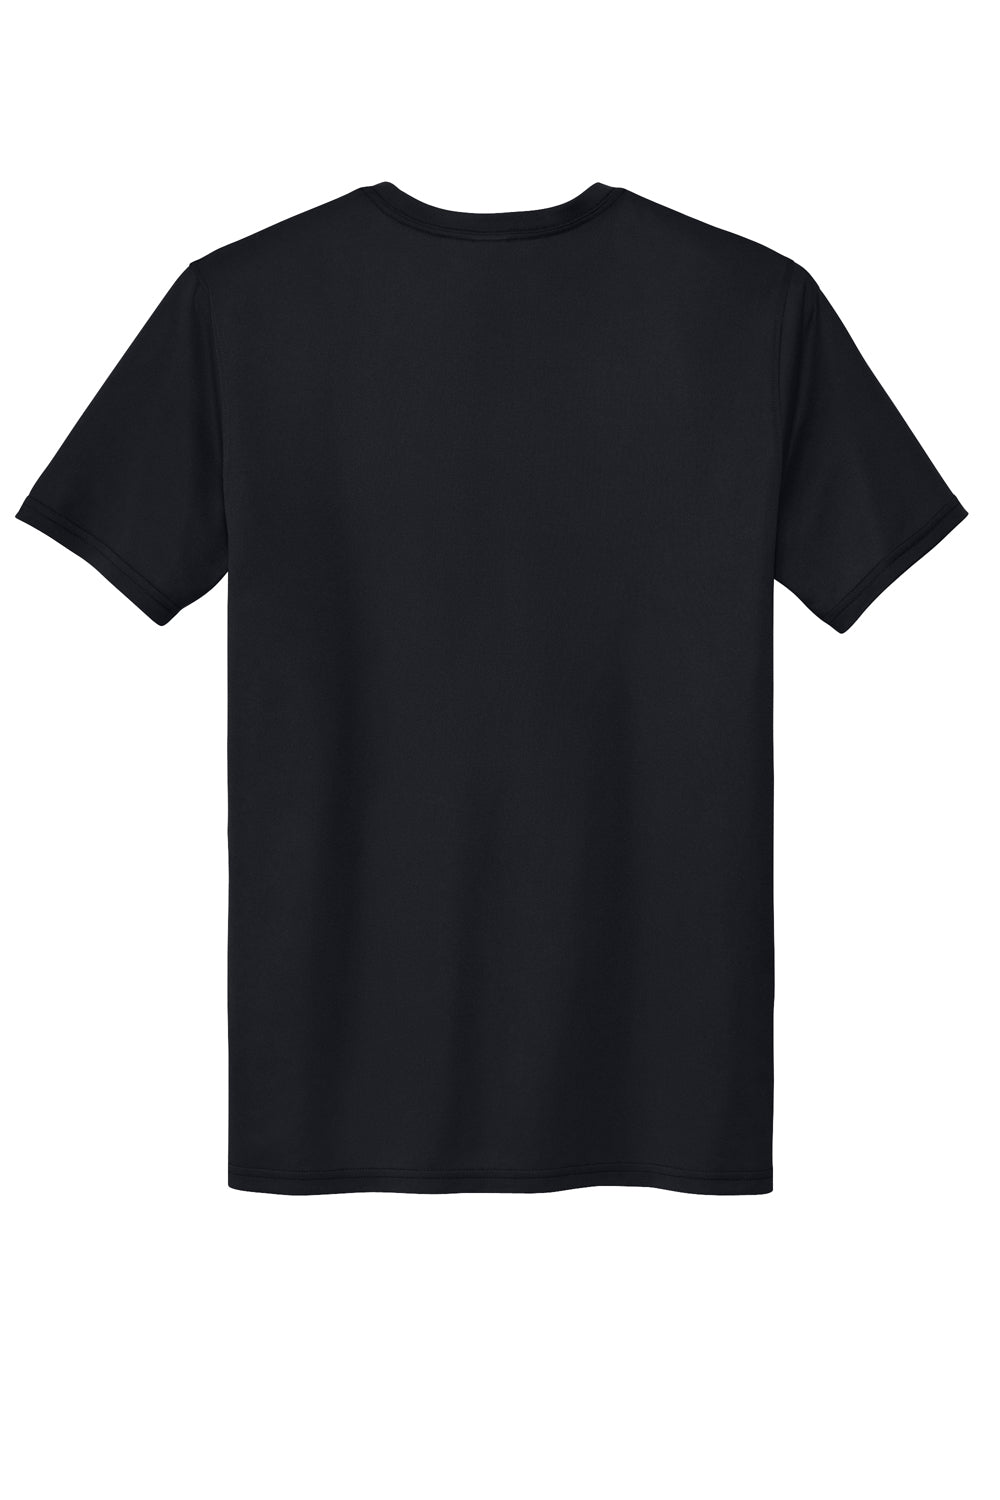 Sport-Tek ST760 Echo Short Sleeve Crewneck T-Shirt Black Flat Back